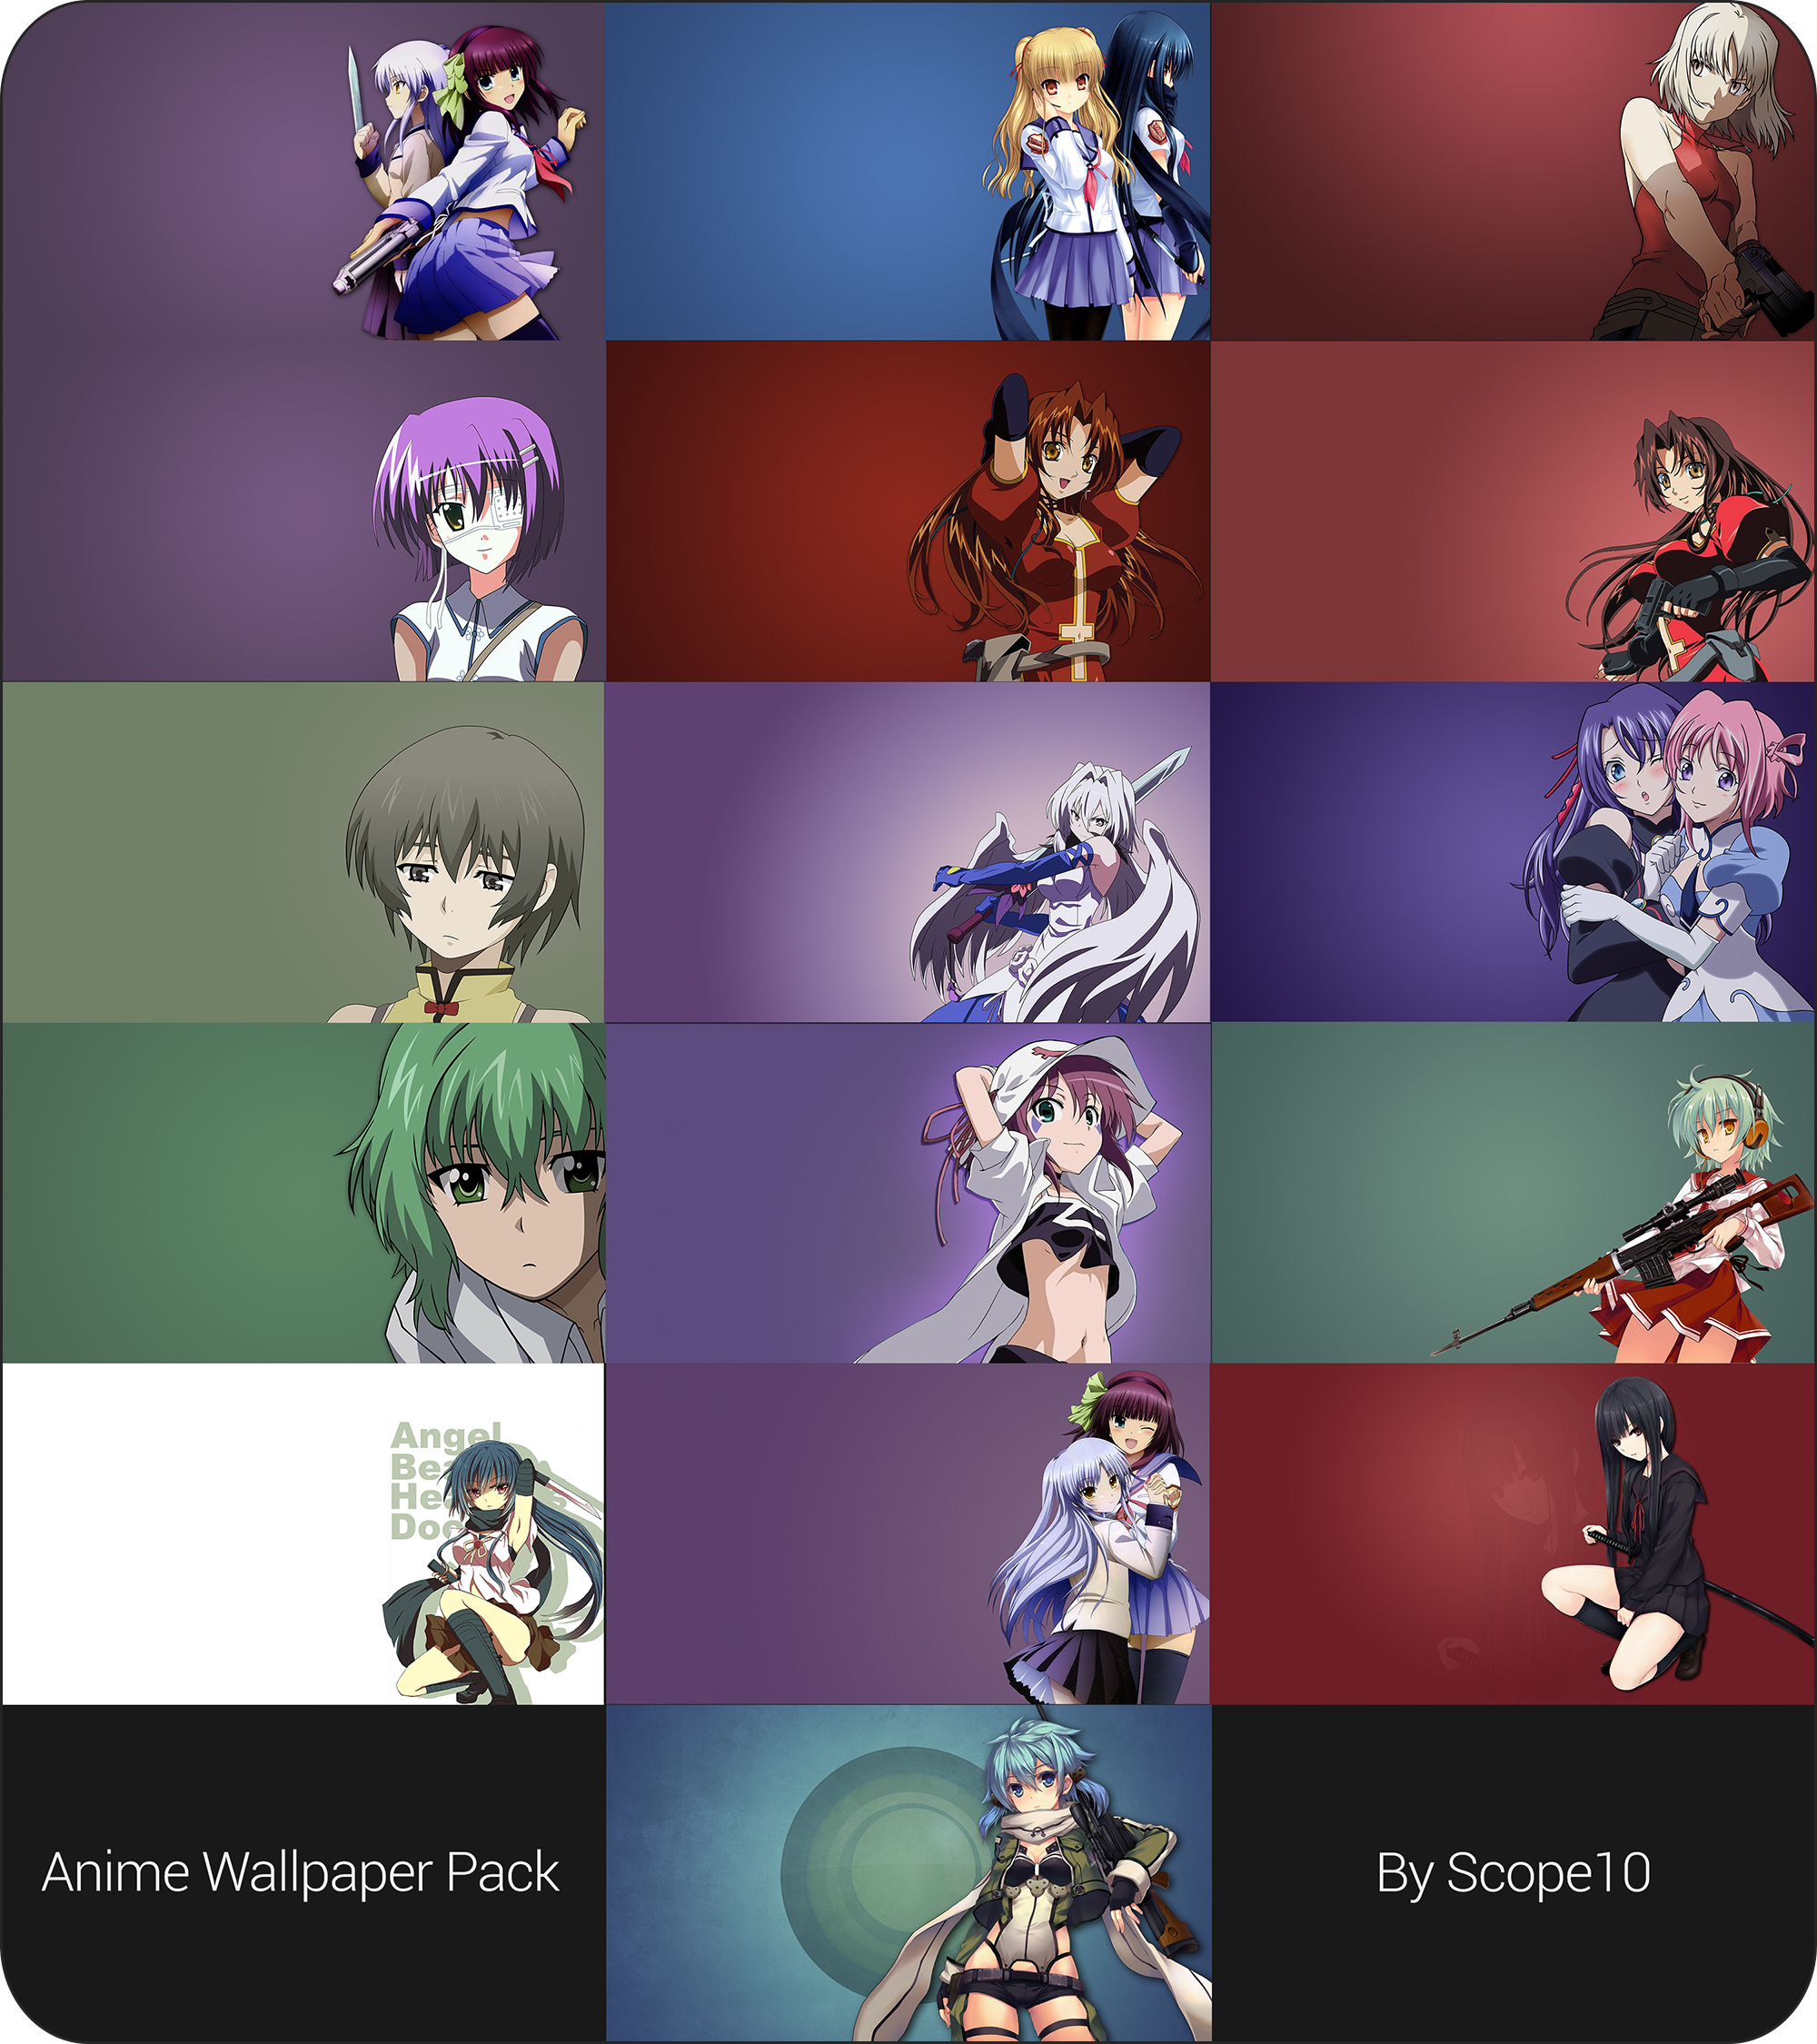 Anime Wallpaper Pack by Scope10 on DeviantArt